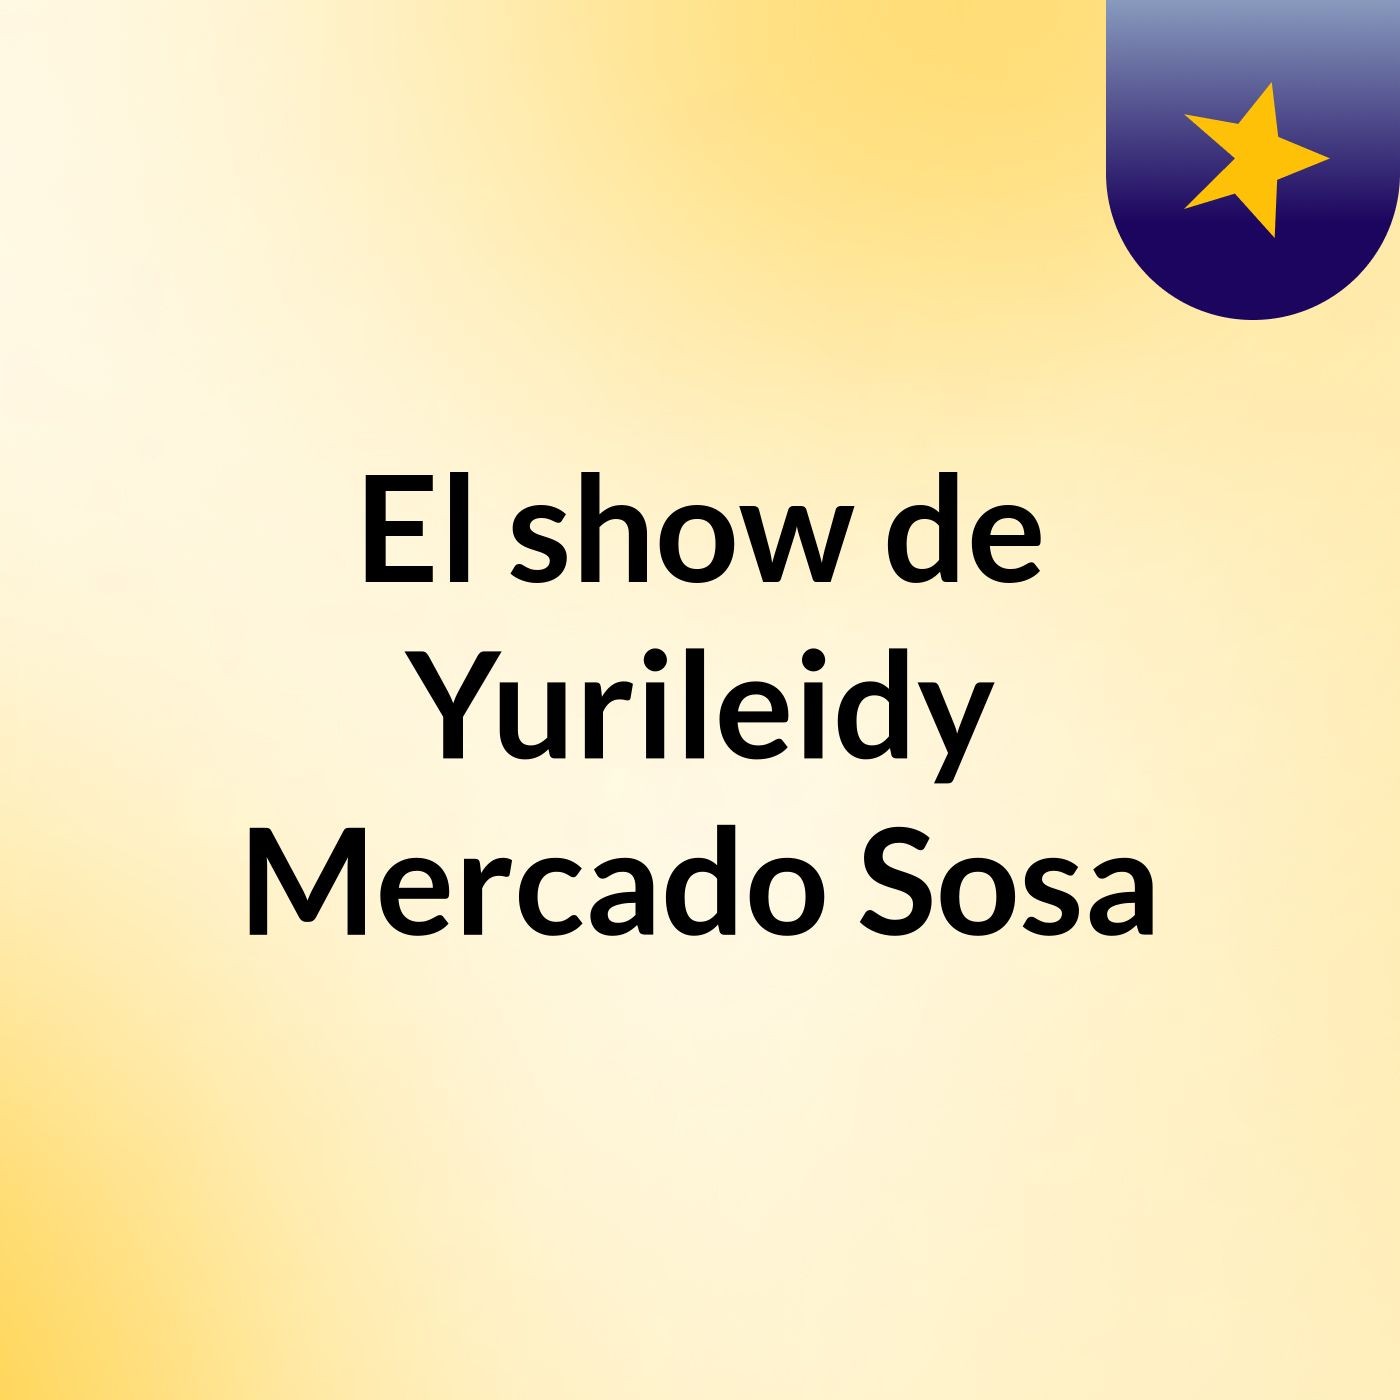 El show de Yurileidy Mercado Sosa